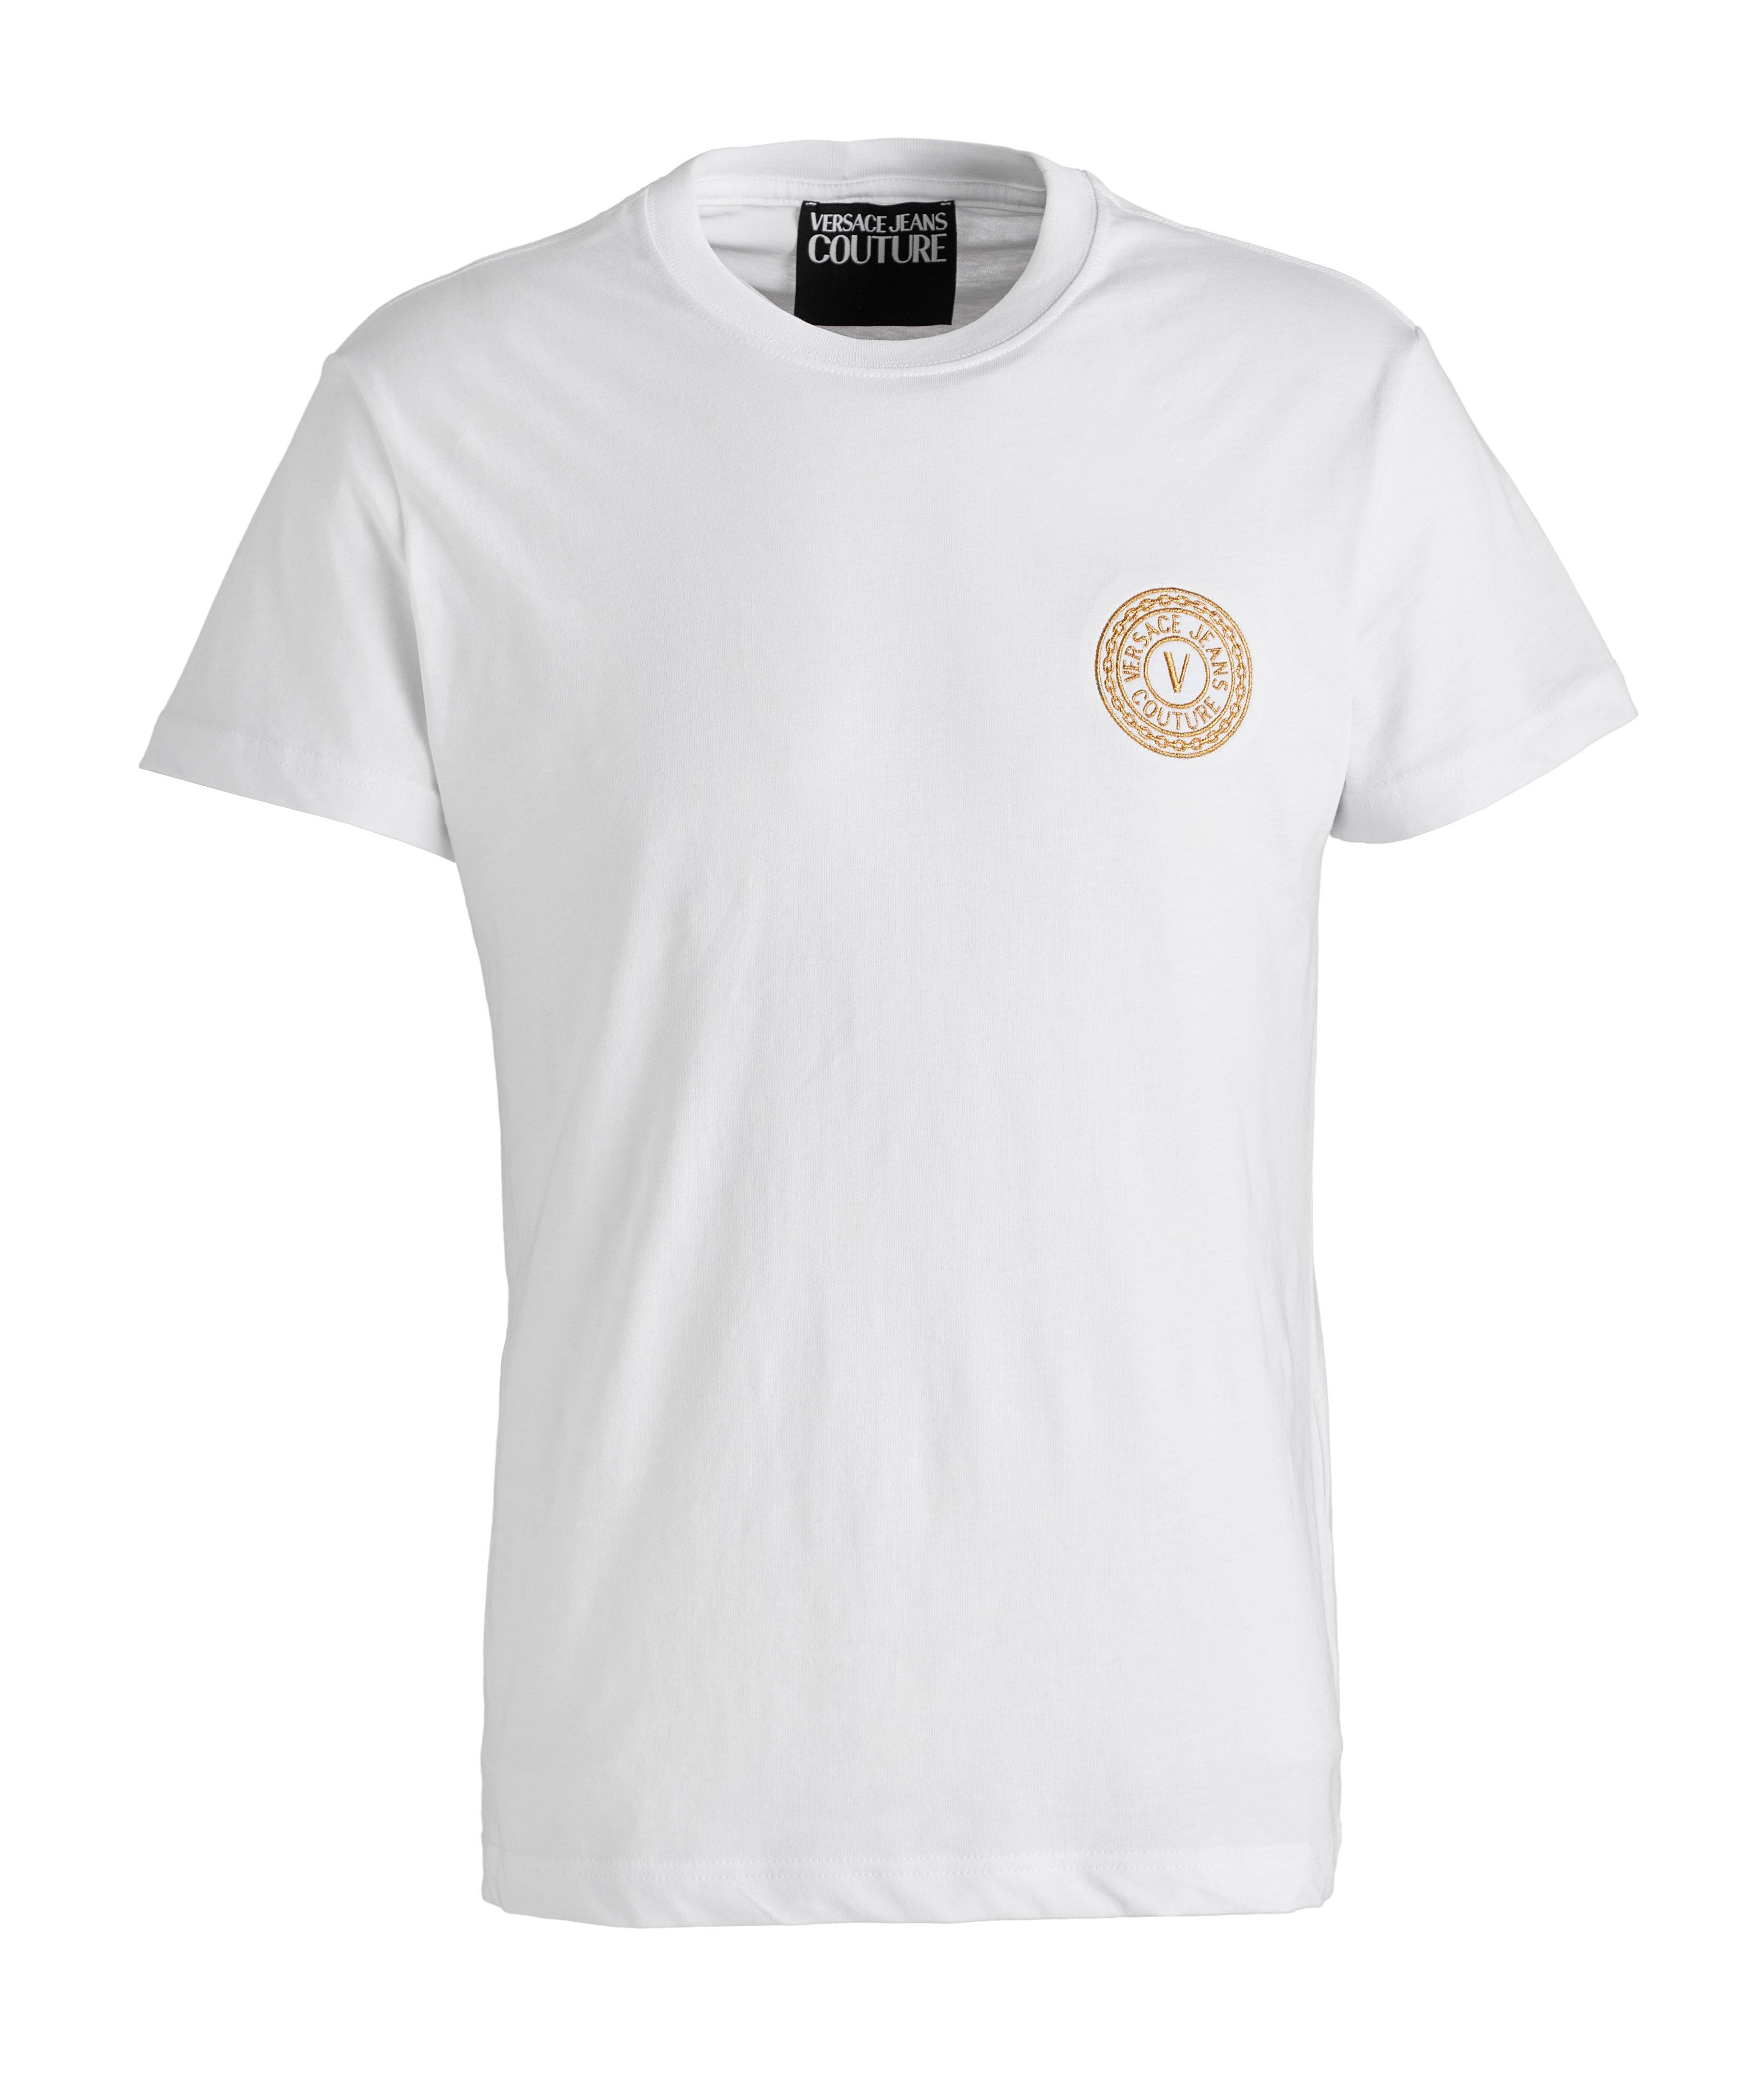 T-shirt en coton avec logo image 0